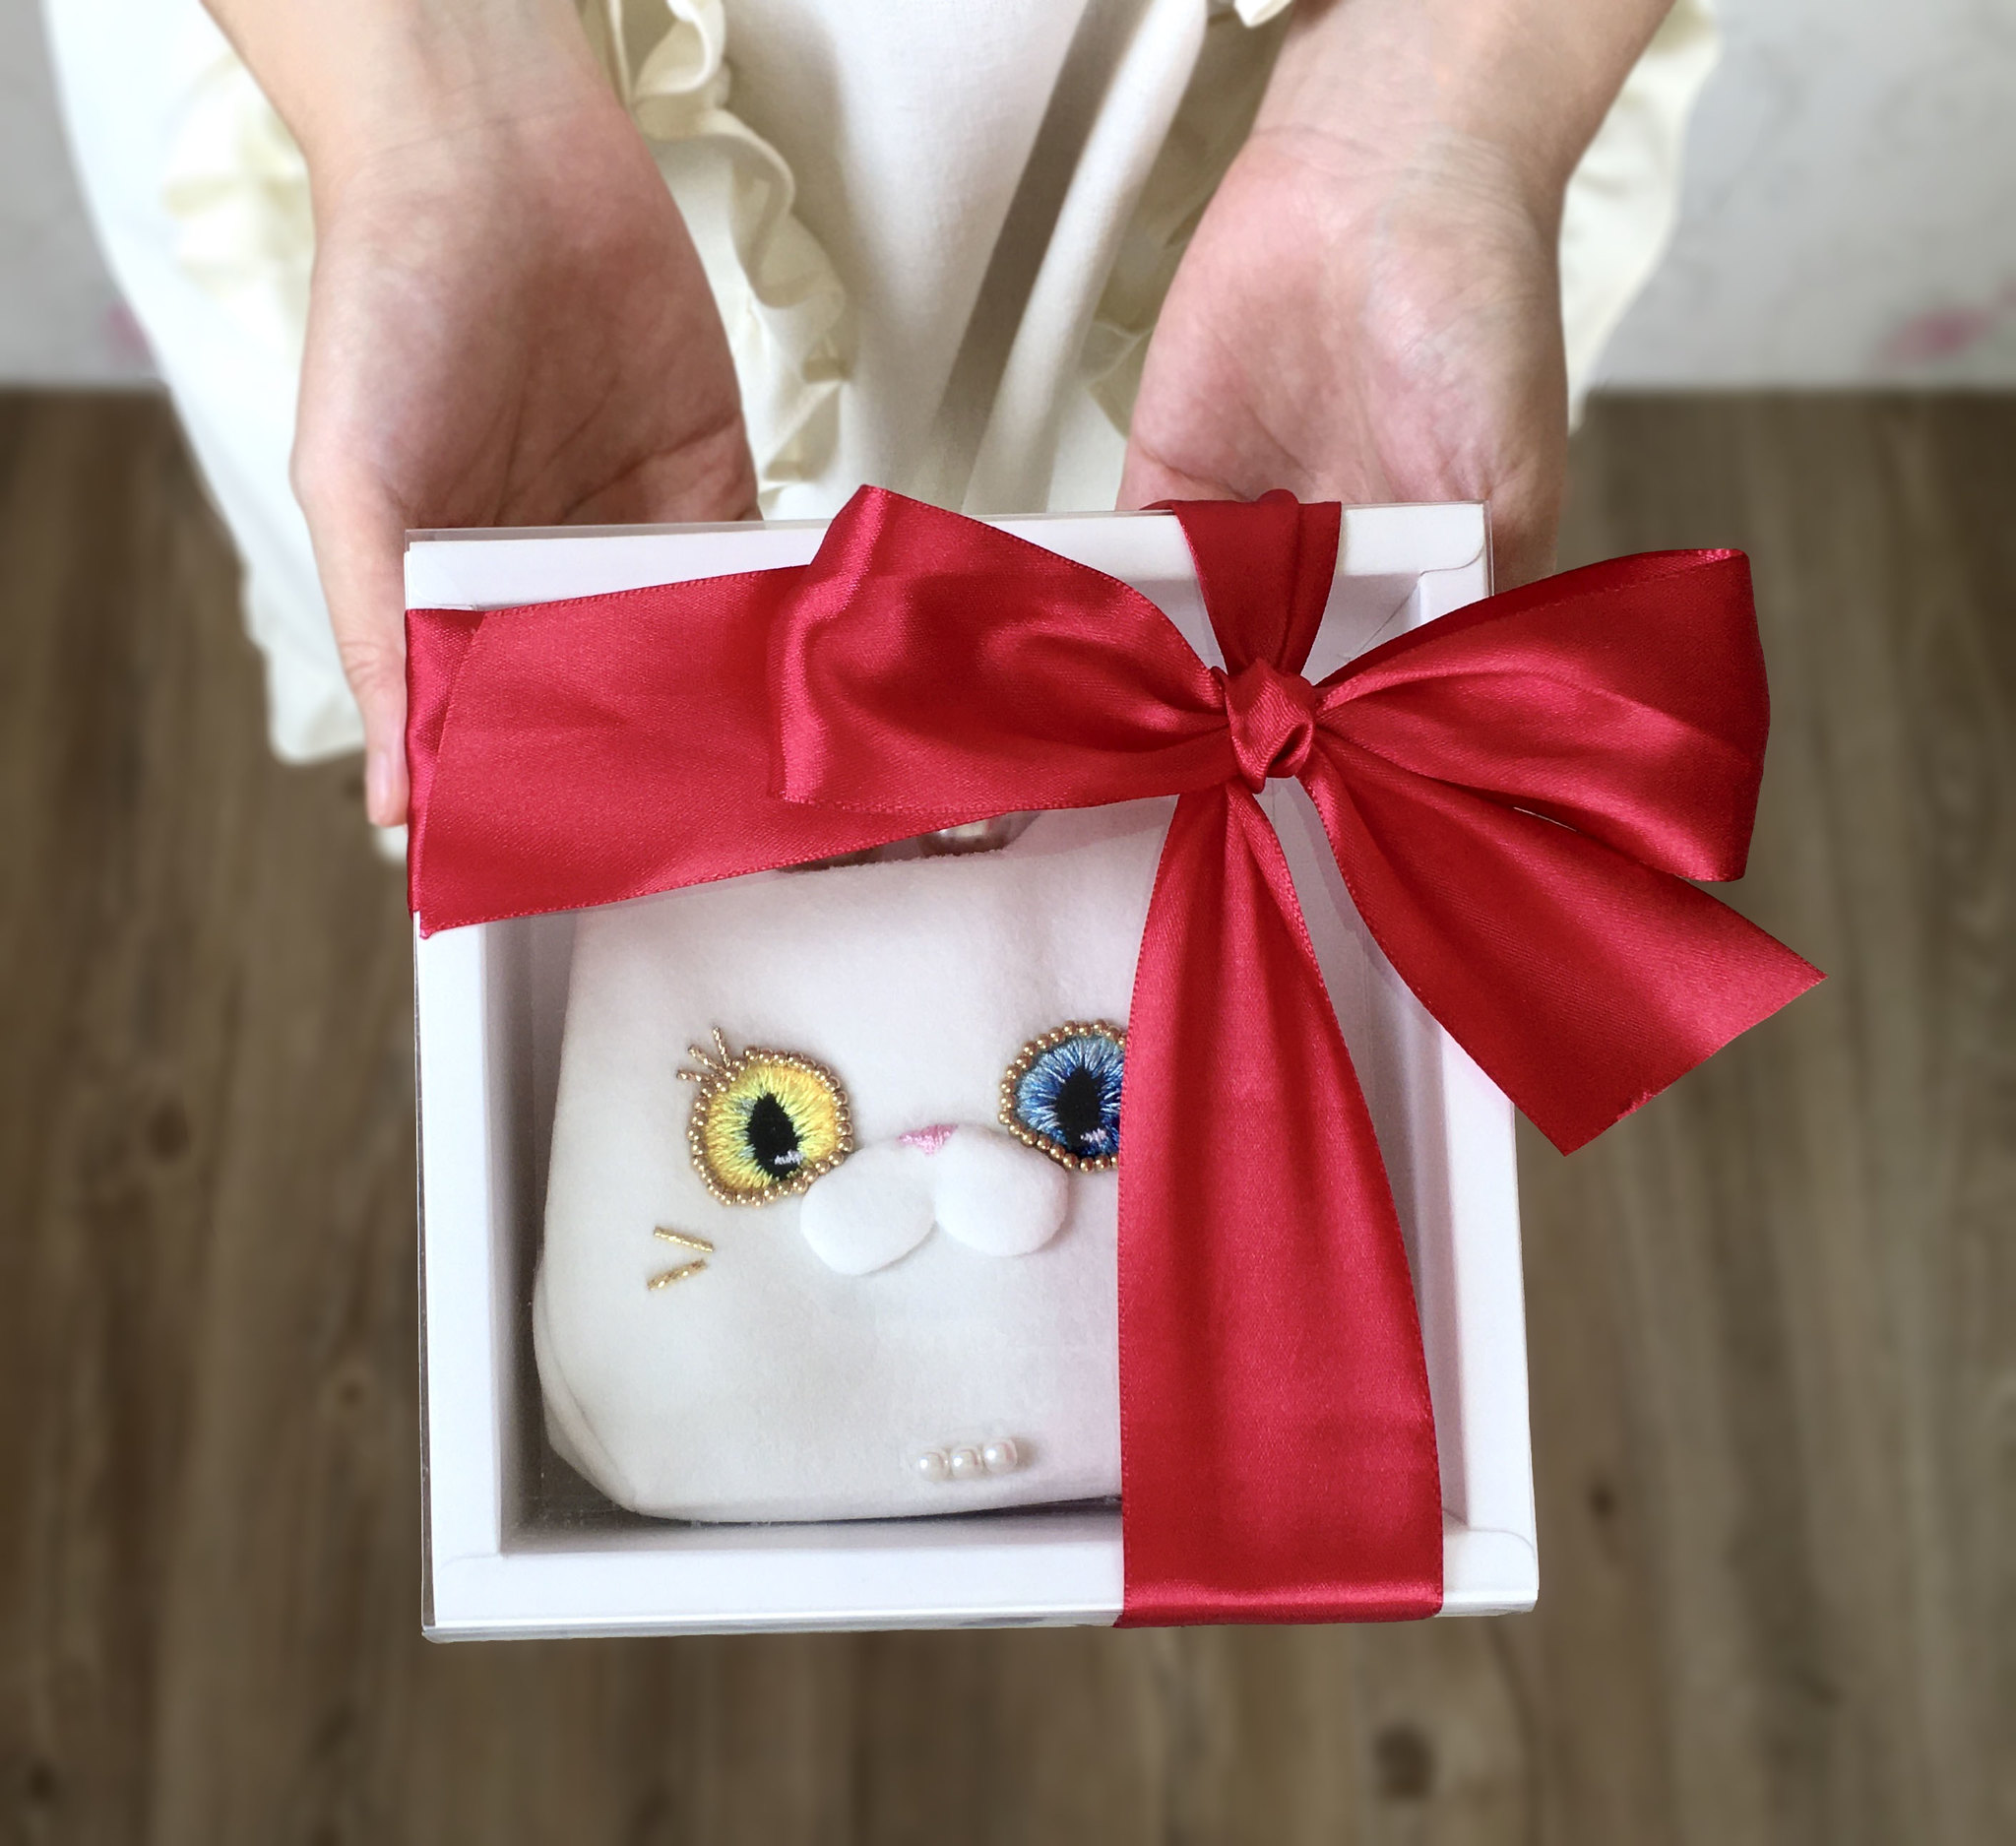 異色瞳白貓夫人短夾以透明蓋的白色紙盒包裝並有紅色緞帶蝴蝶結